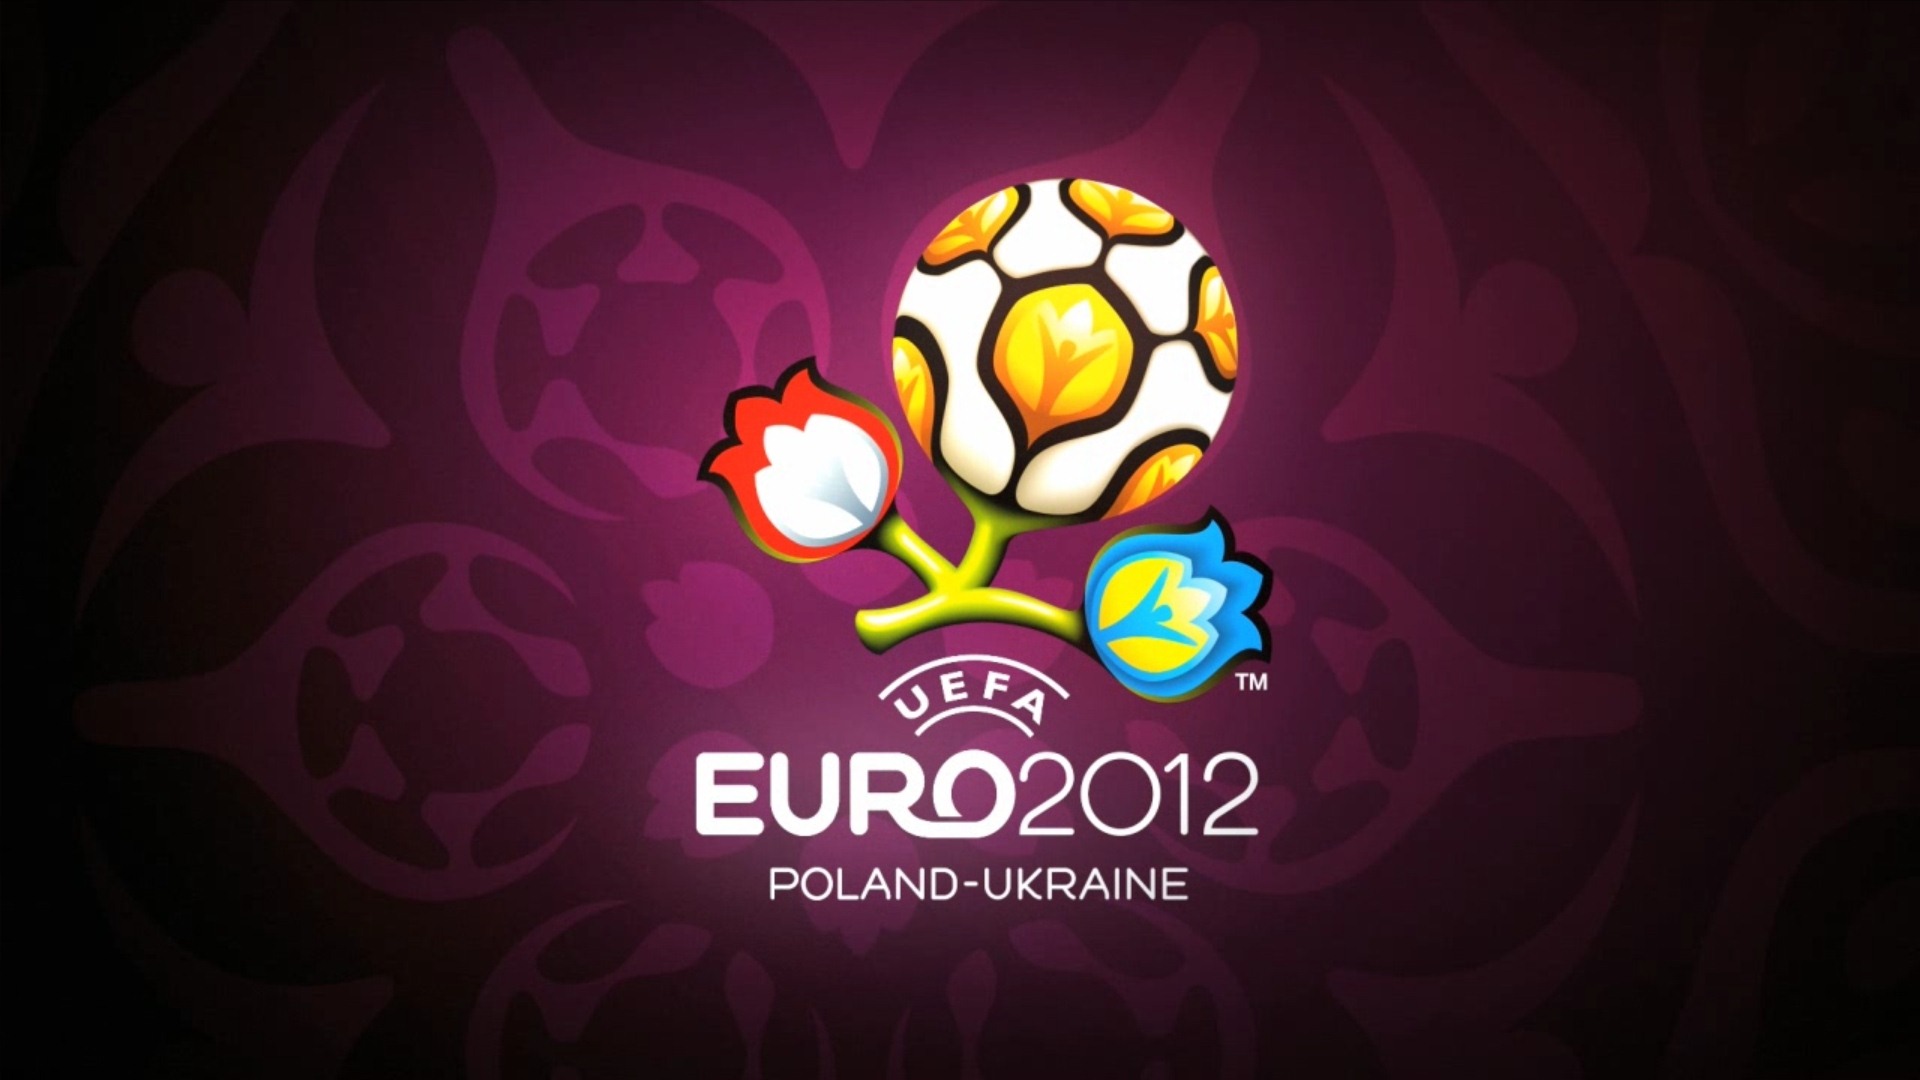 UEFA EURO 2012 欧洲足球锦标赛 高清壁纸(二)15 - 1920x1080